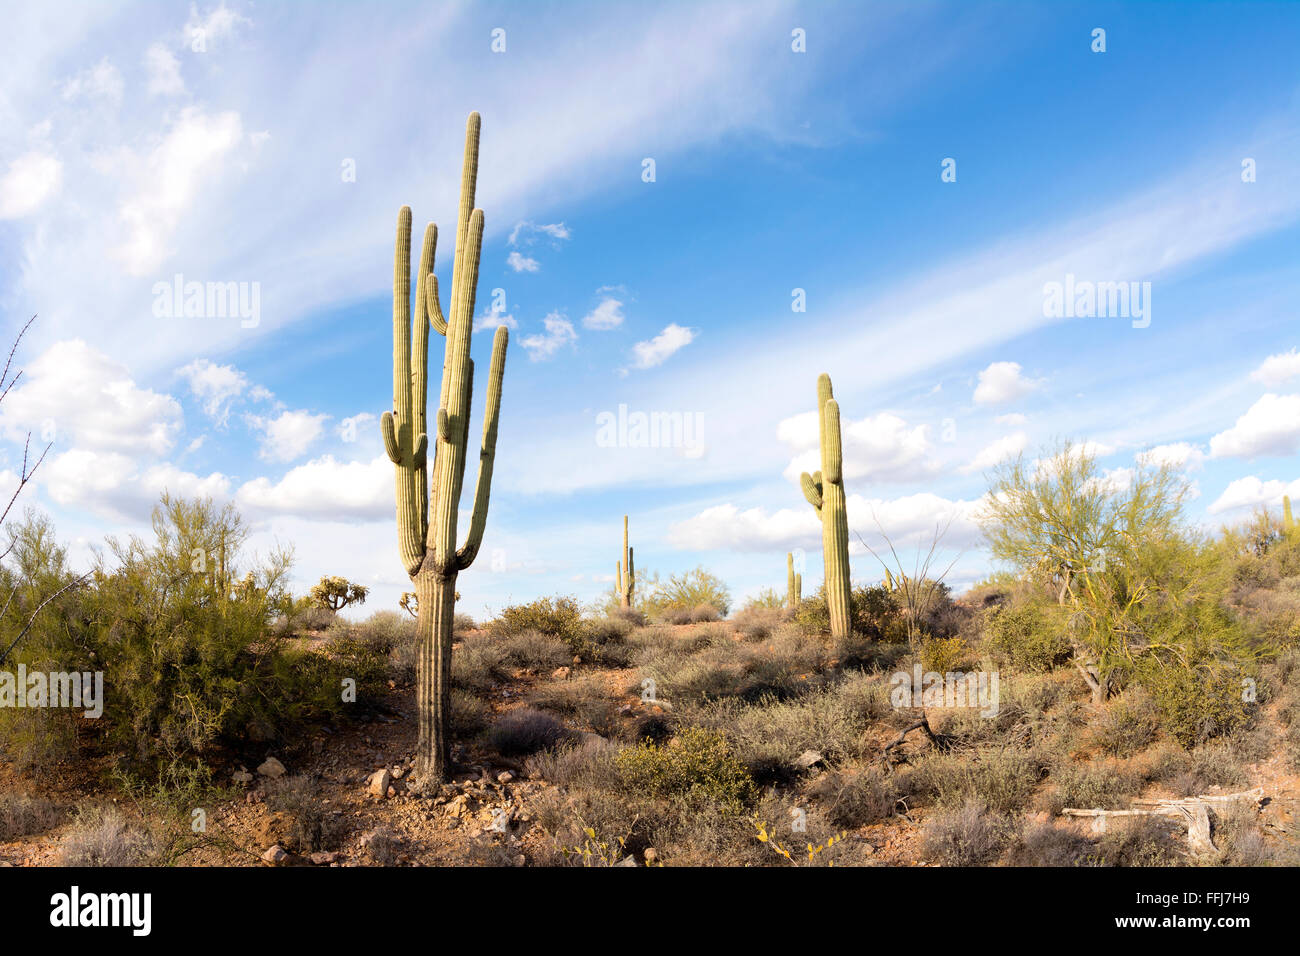 Une image de la superstition en Arizona désert montre le détail d'un désert sec avec un saguaro cactus Banque D'Images